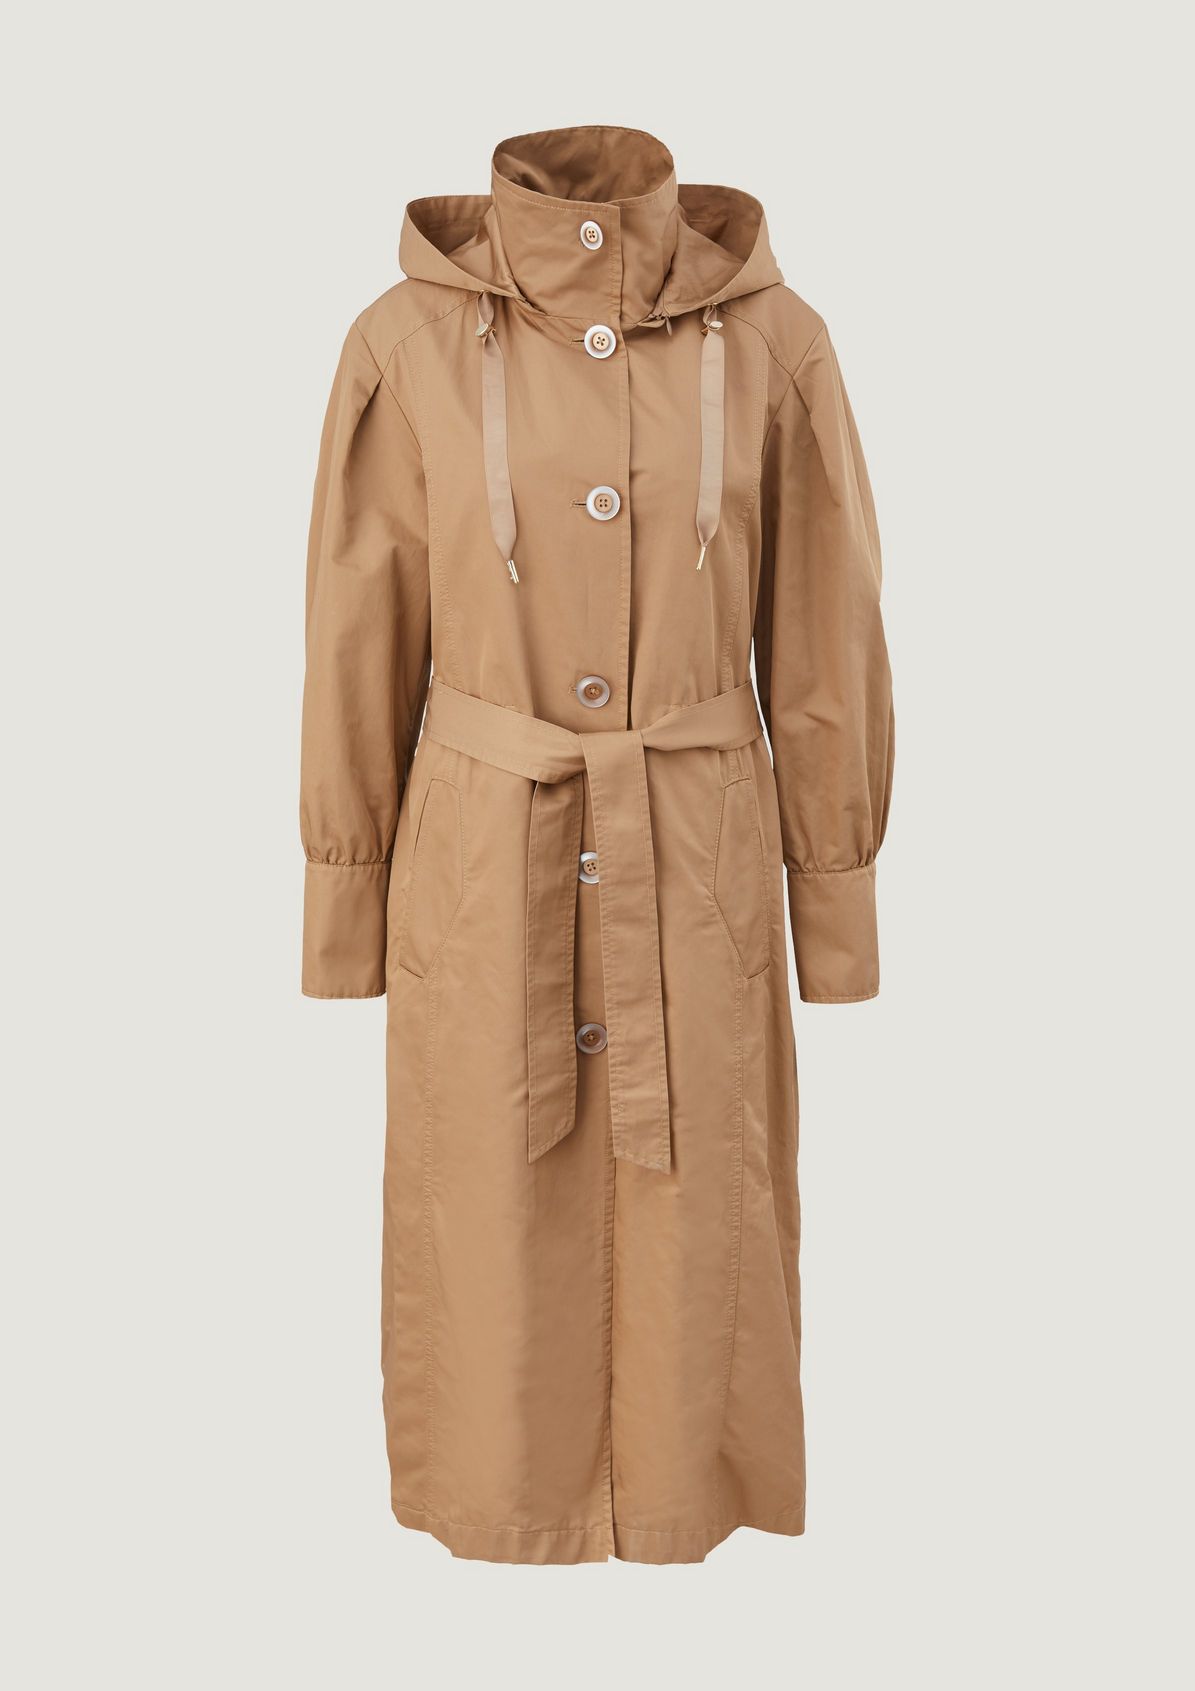 Primark Trench coat discount 70% Green 40                  EU WOMEN FASHION Coats Casual 